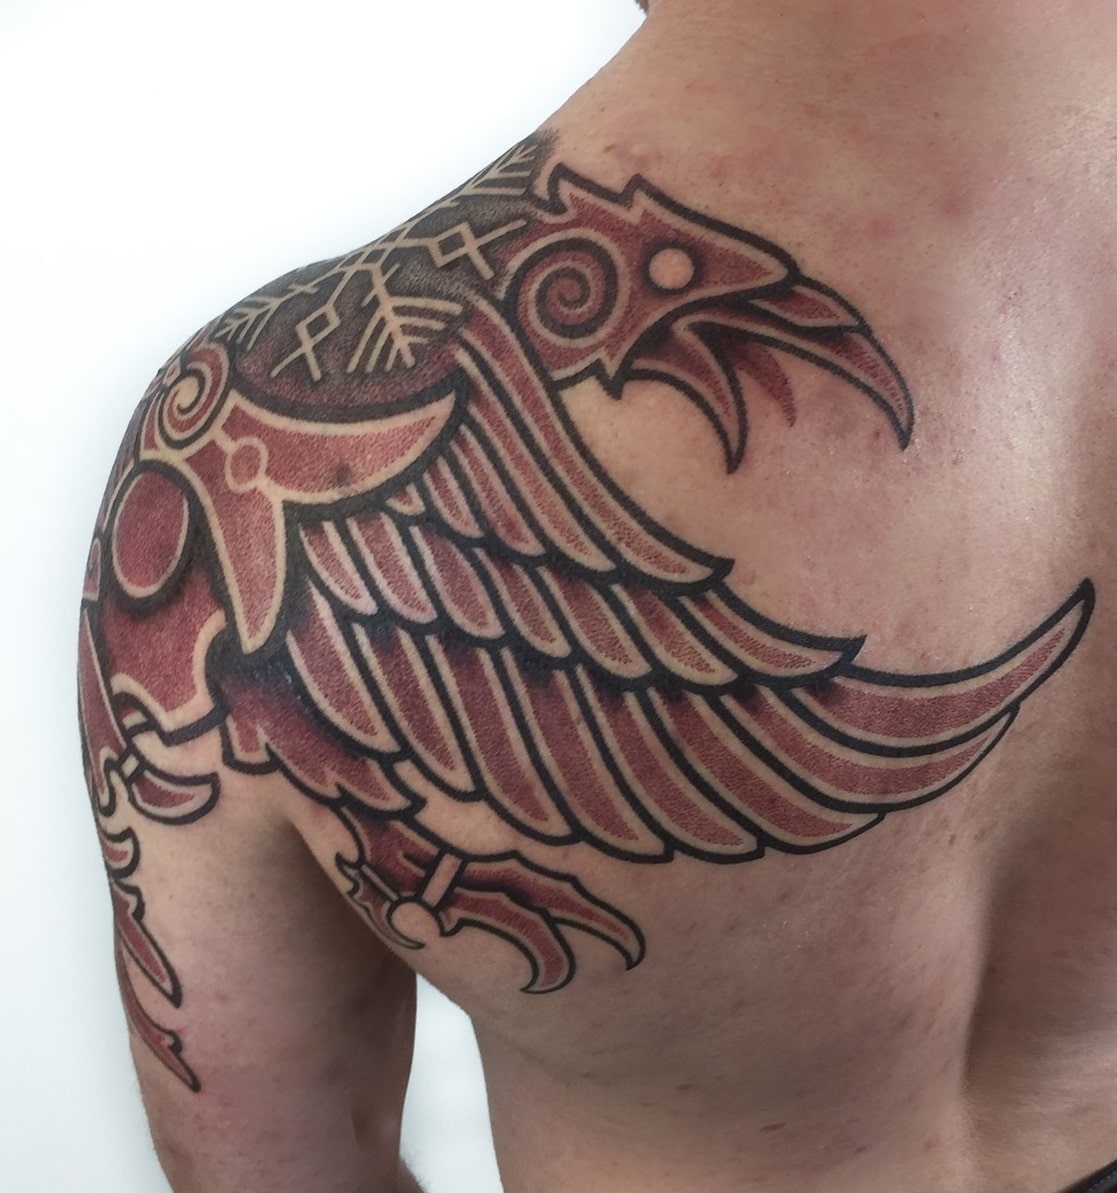 The Meanings Behind Huginn & Muninn Tattoos